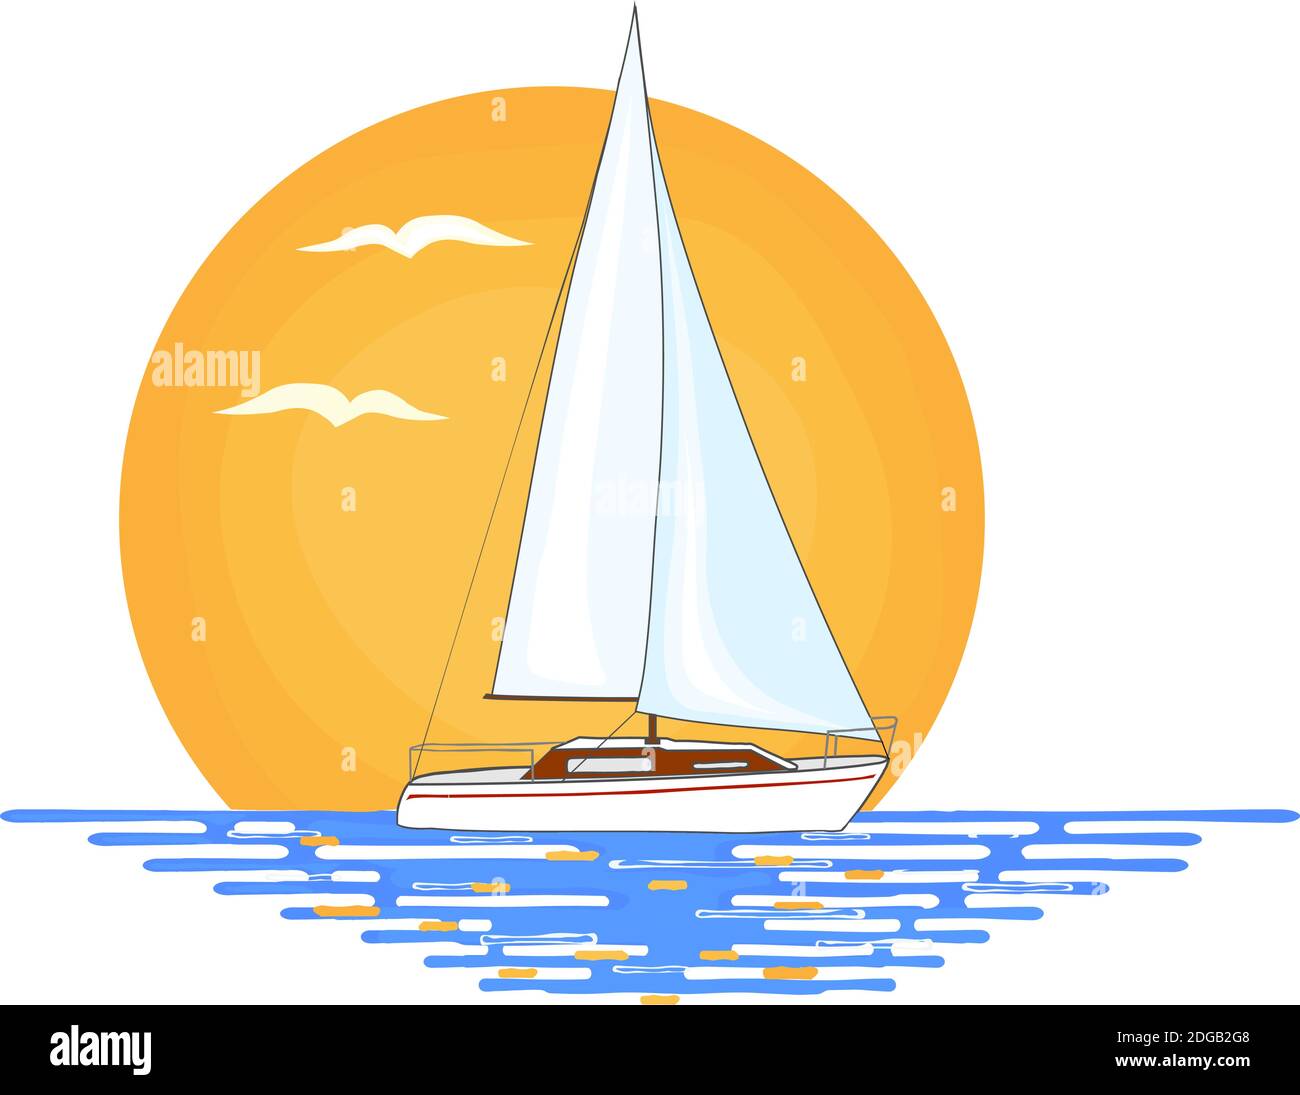 Barca a vela bianca con striscia rossa sul suo lato posto sulla superficie dell'acqua. Sole arancione e uccelli volanti sullo sfondo. Immagine isolata su bianco ba Illustrazione Vettoriale